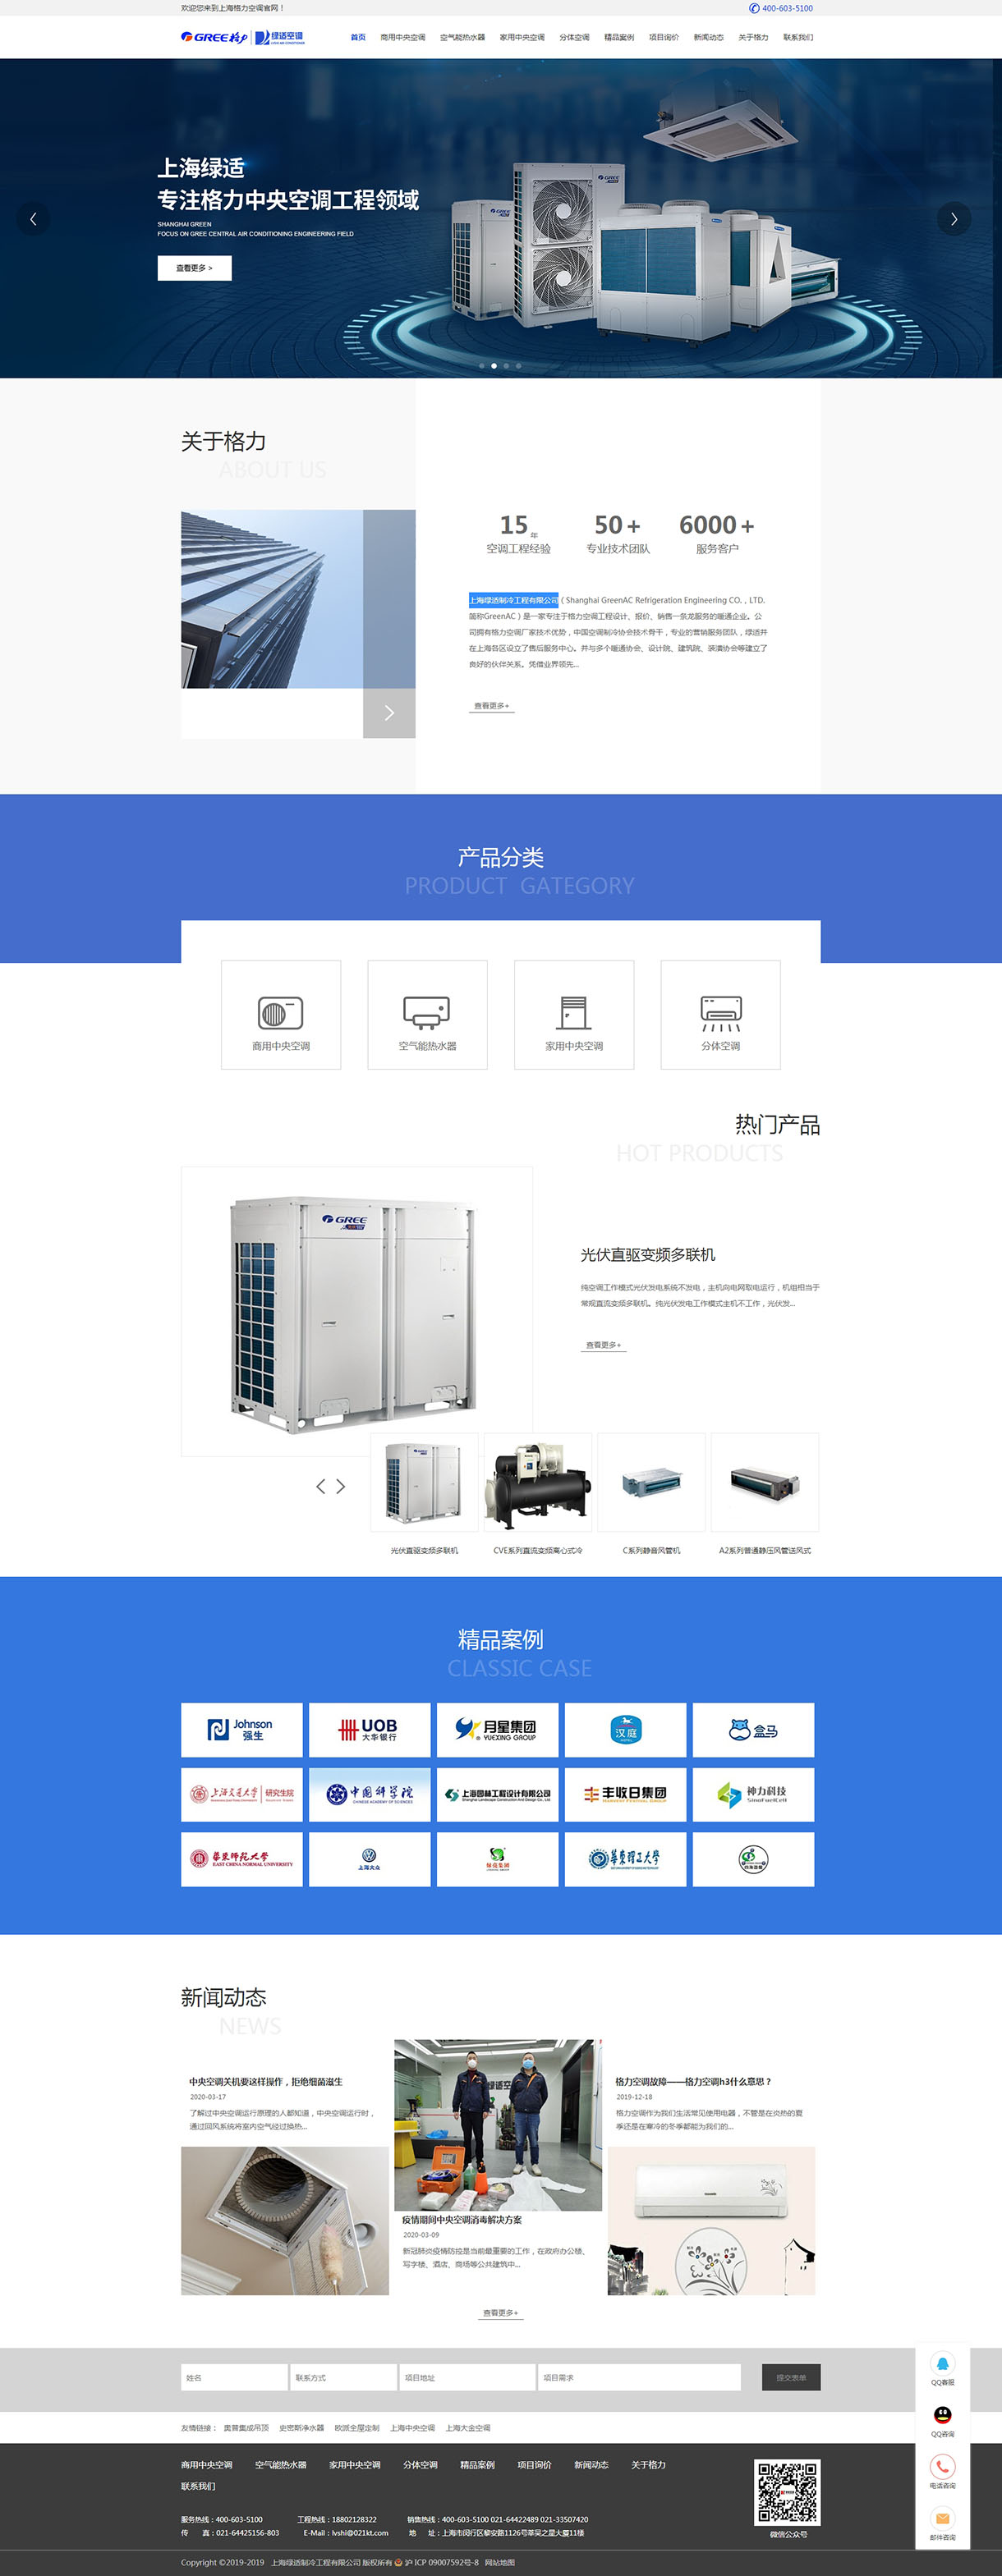 上海绿适制冷工程有限公司网站制作案例